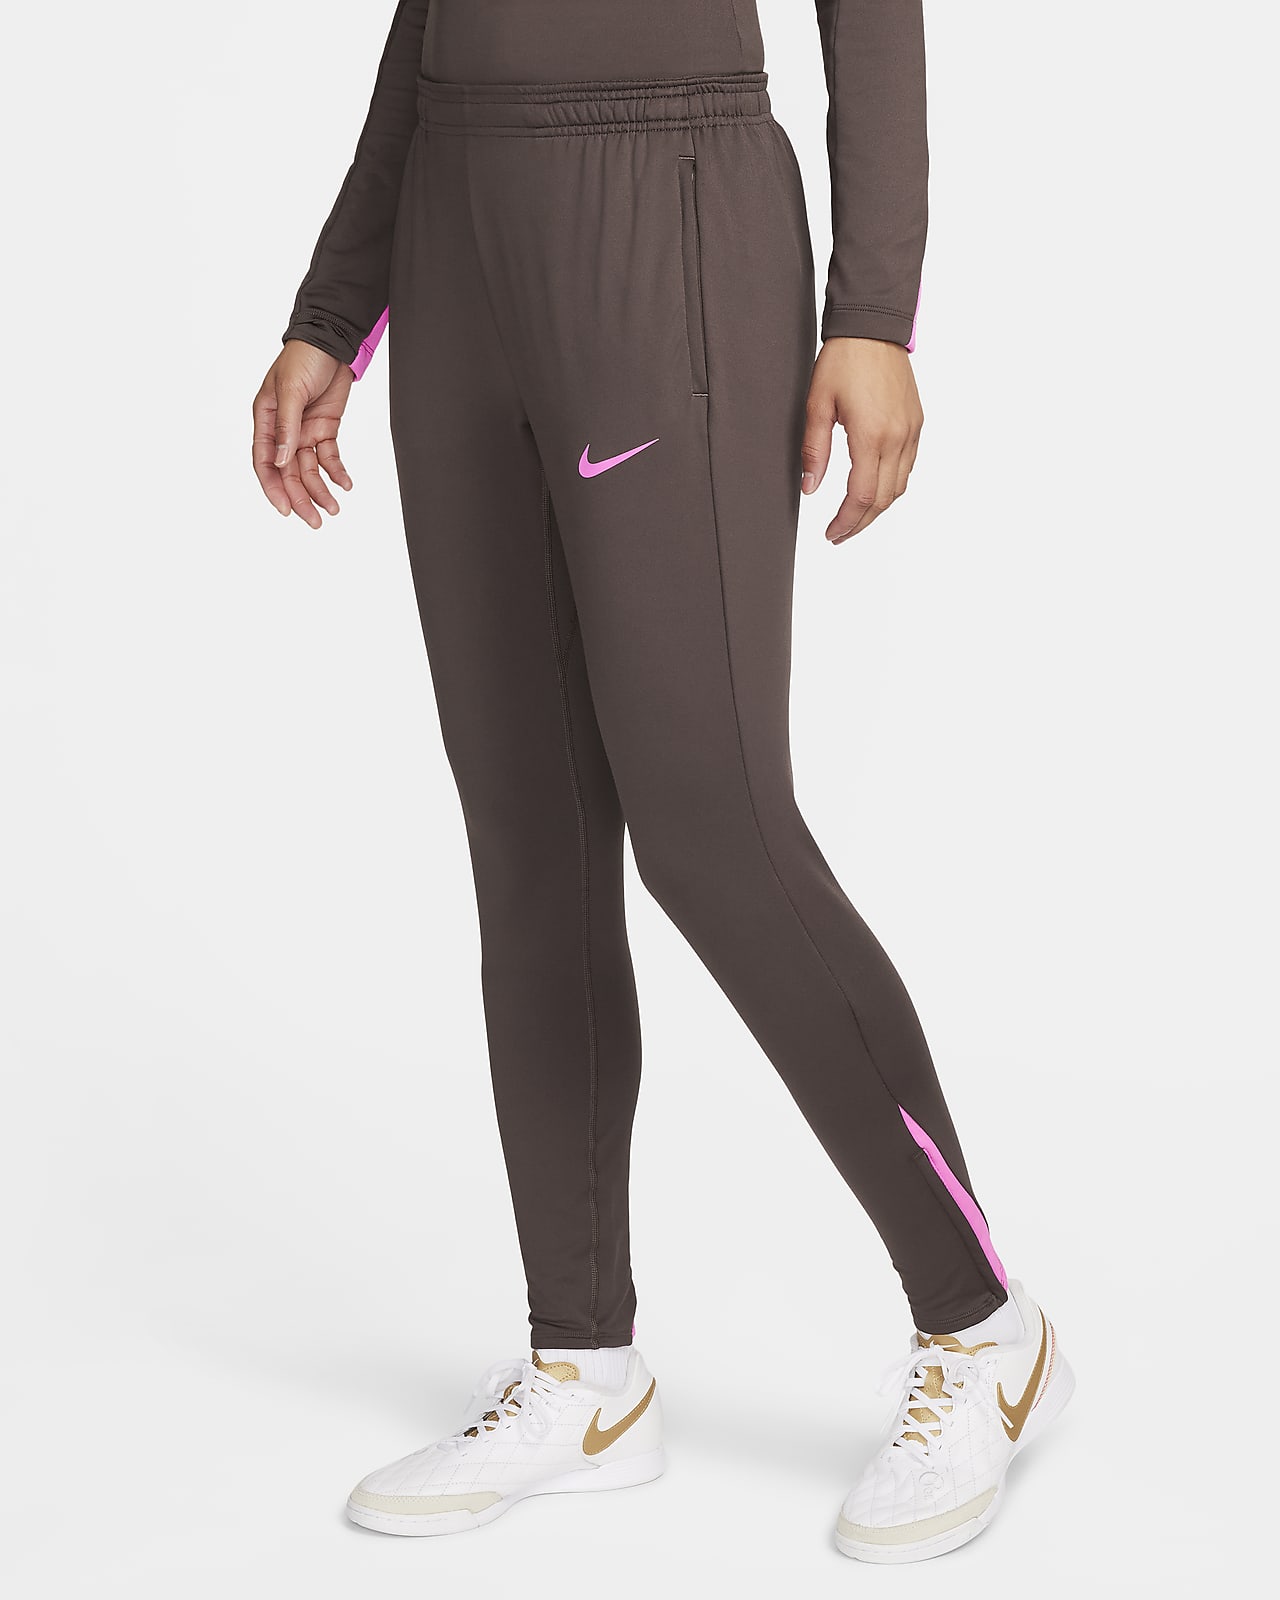 Women's Nike Sportswear Tech Fleece Pants 2XL Zipper White Black Training  Casual | eBay